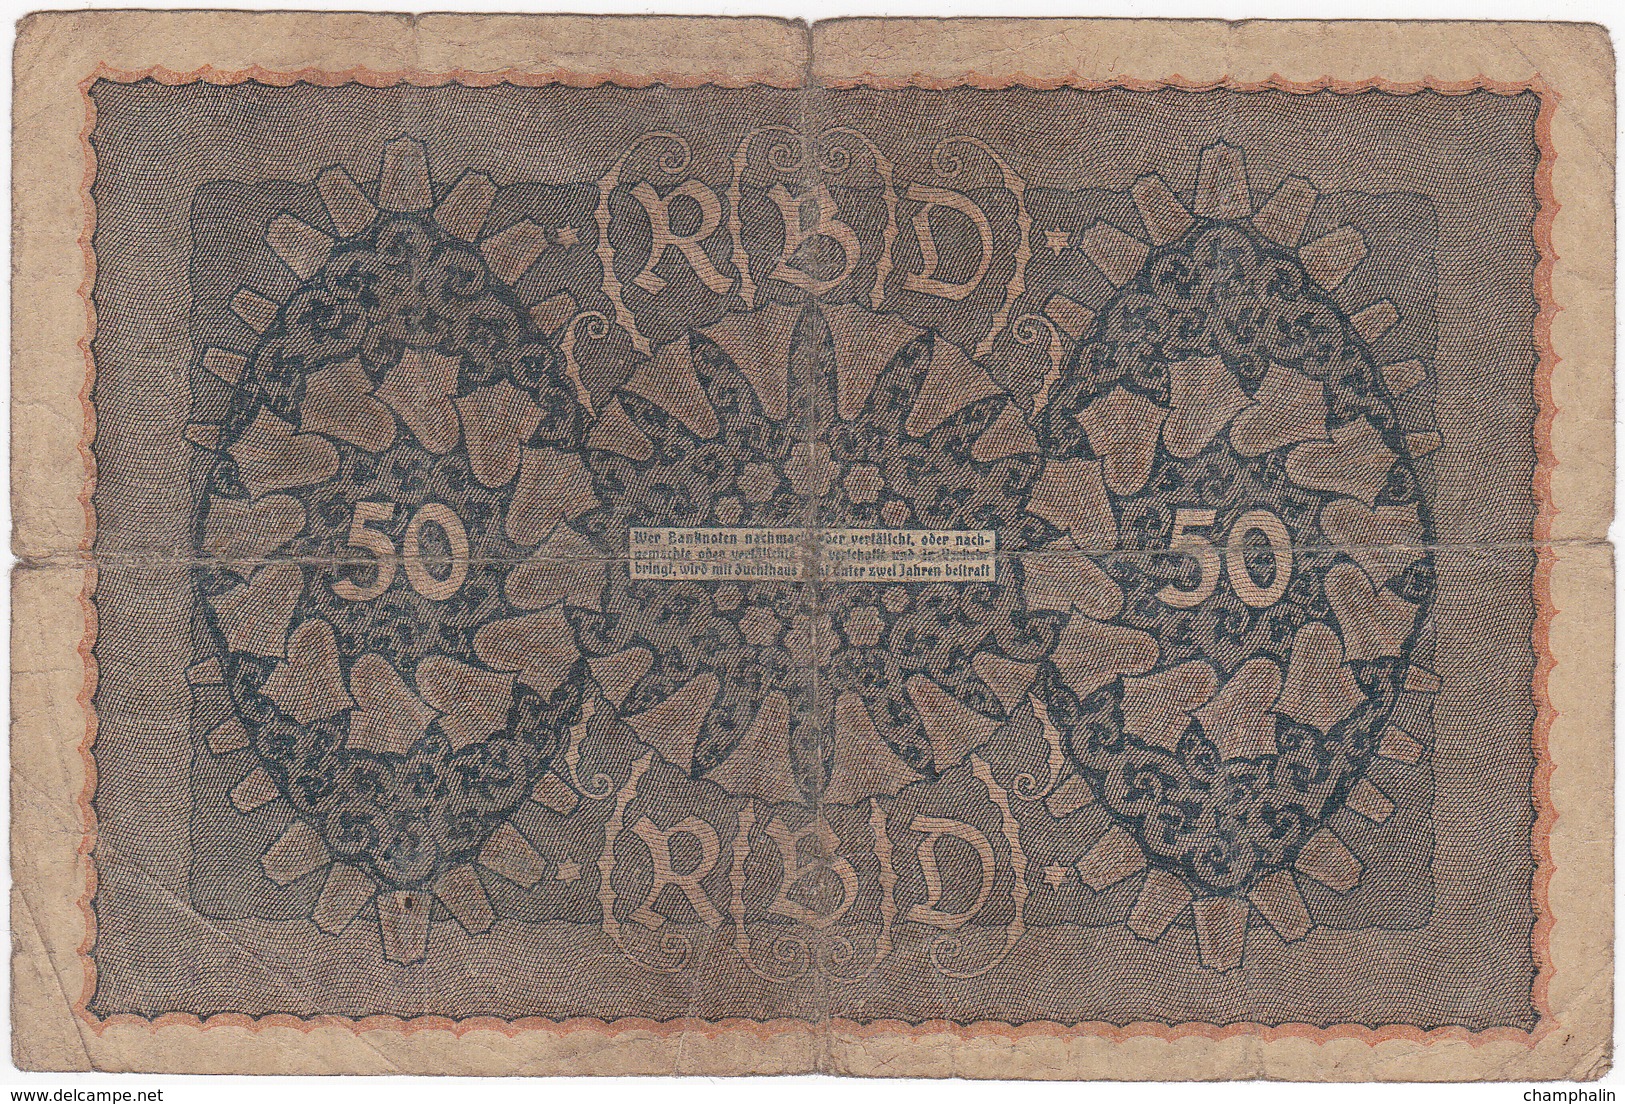 Allemagne - Billet De 50 Mark - 24 Juin 1919 - 50 Mark